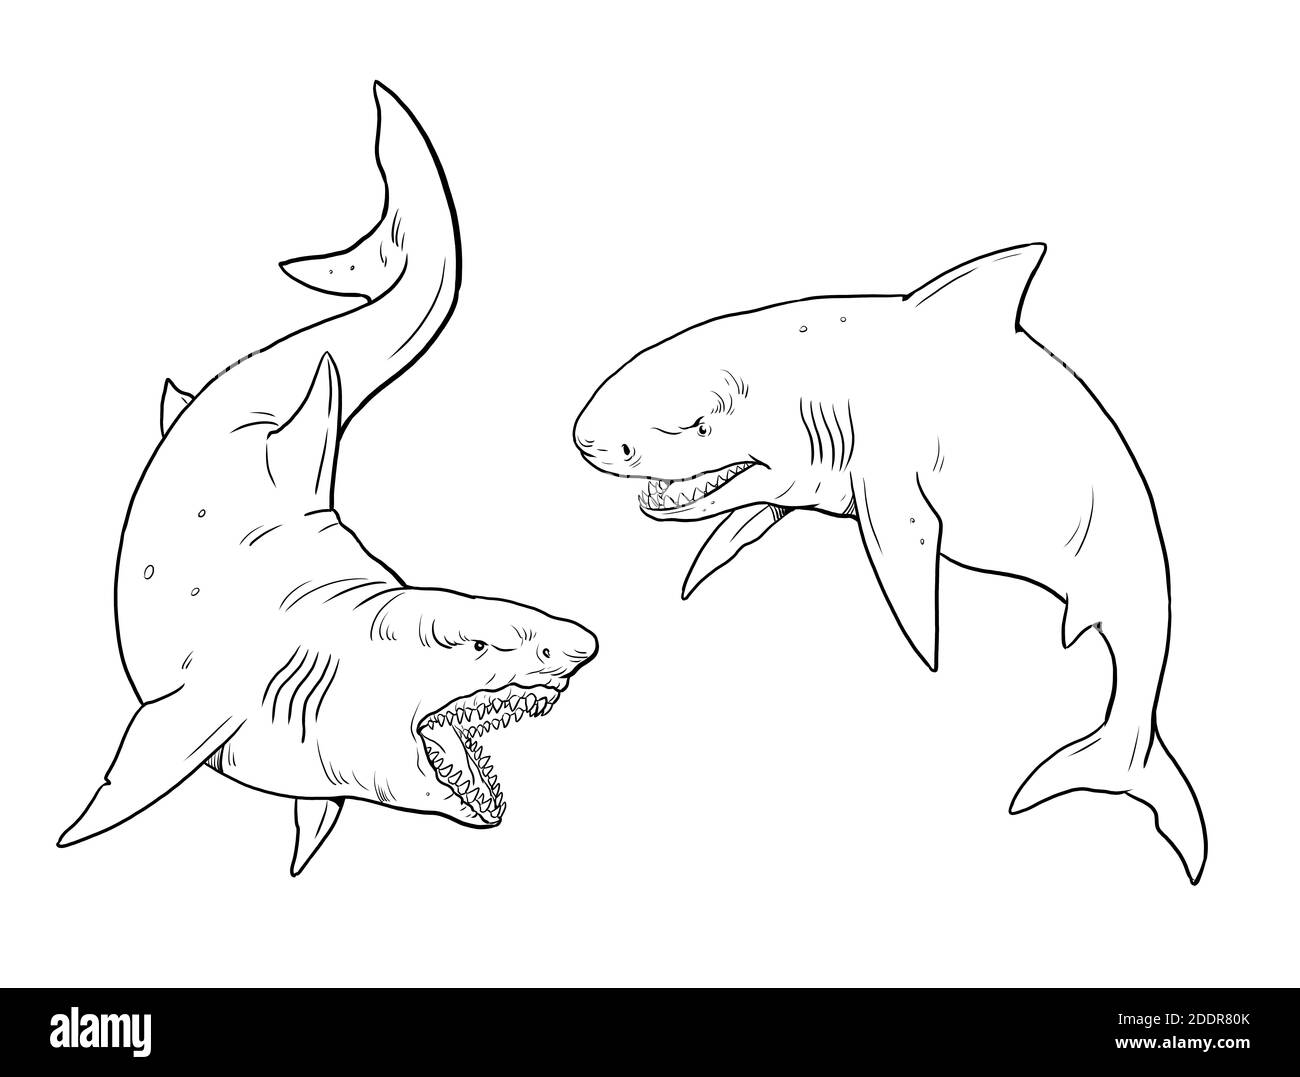 Killer great white shark Stock Vector Images - Alamy